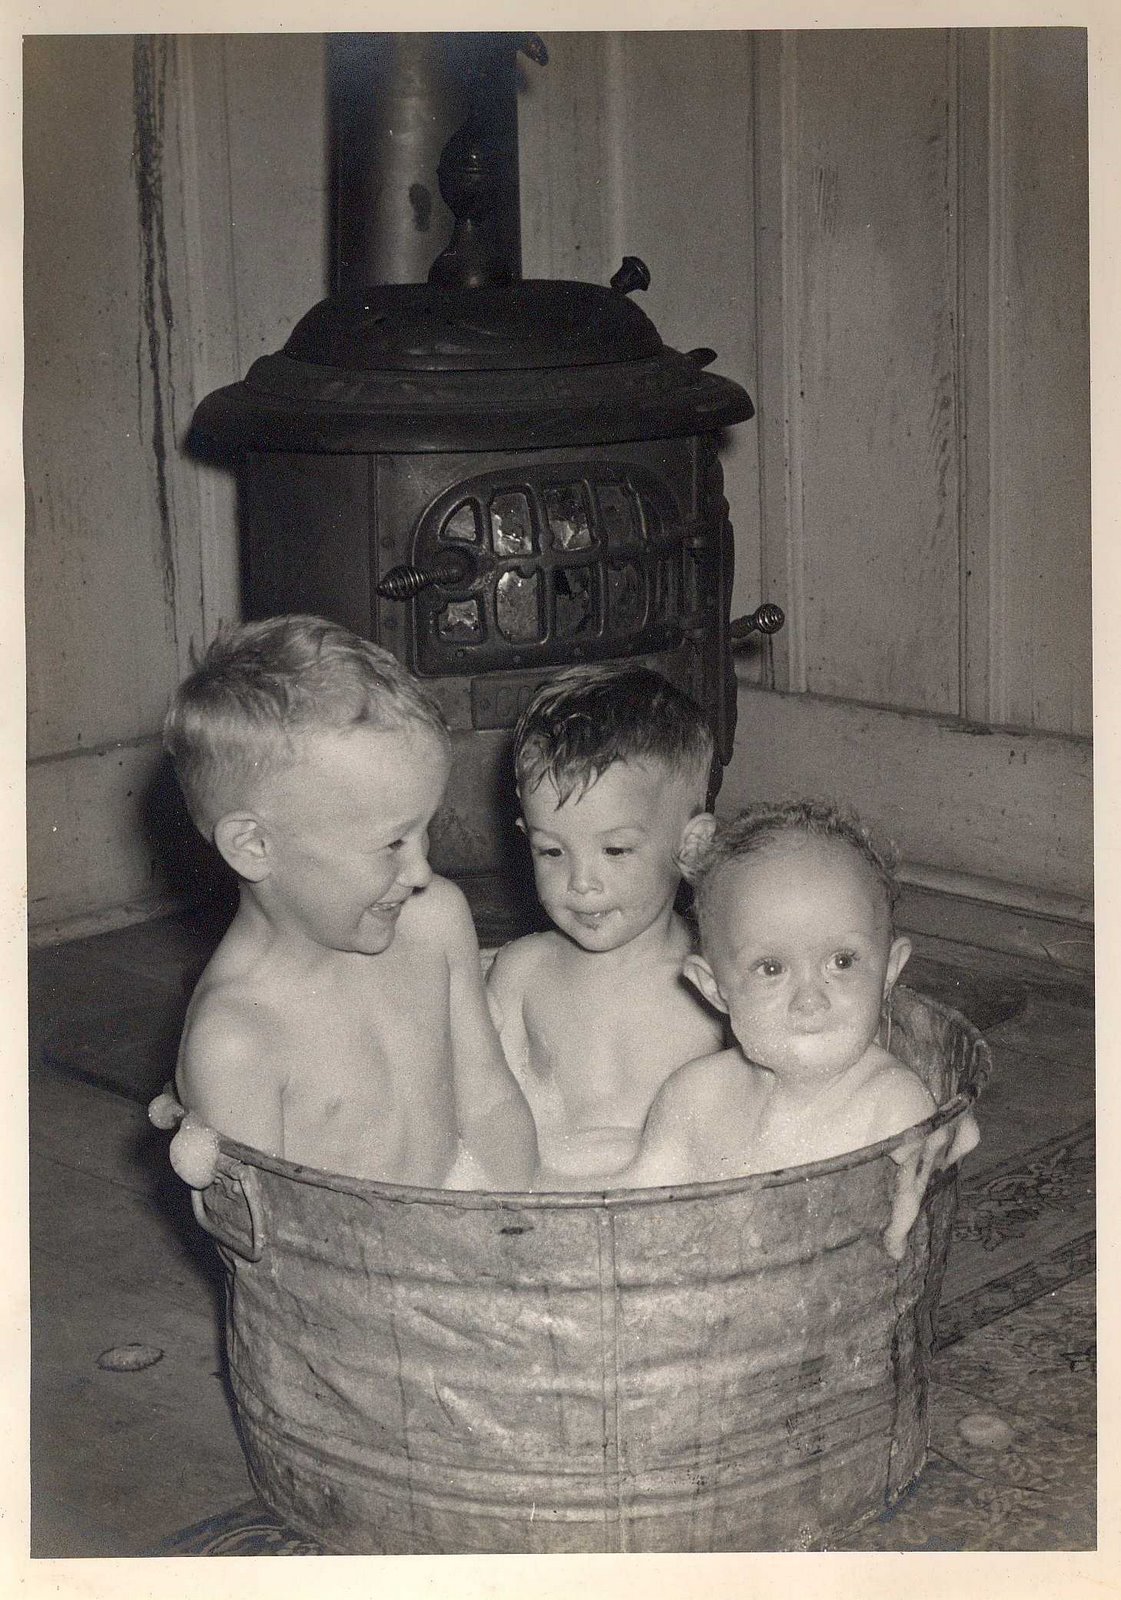 [3+men+in+a+tub.JPG]